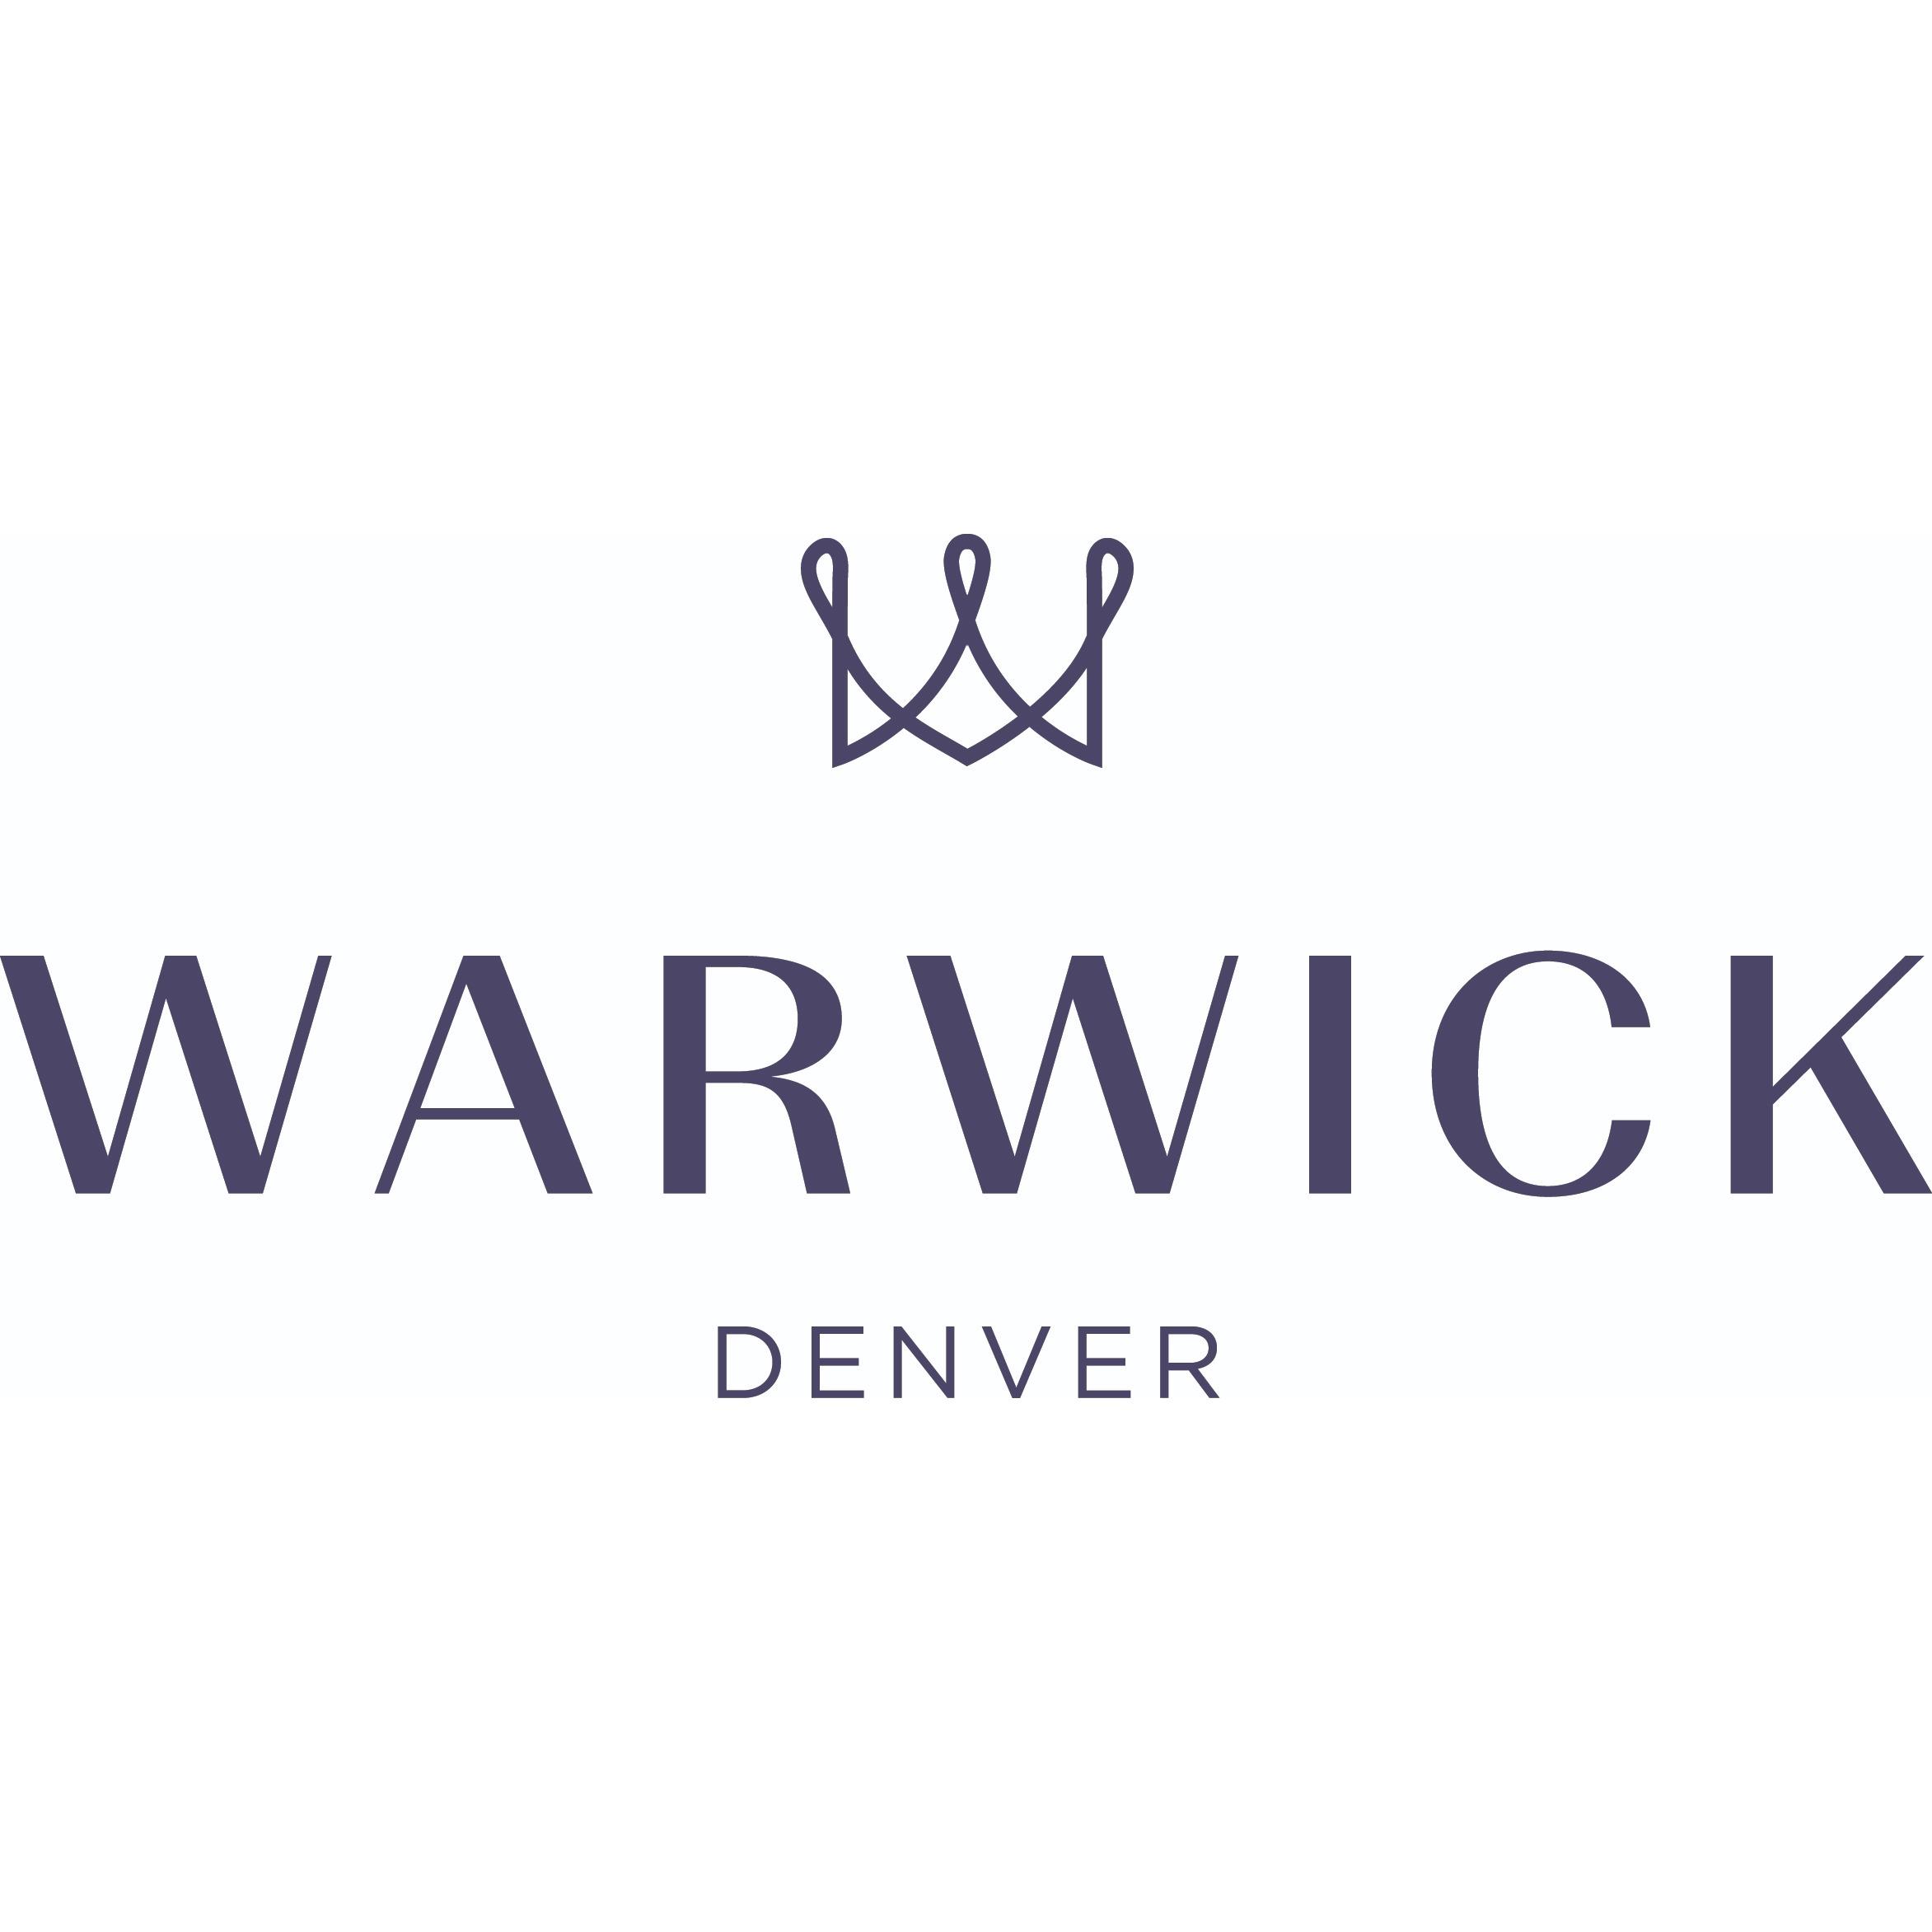 Warwick Denver - Denver, CO 80203 - (303)861-2000 | ShowMeLocal.com